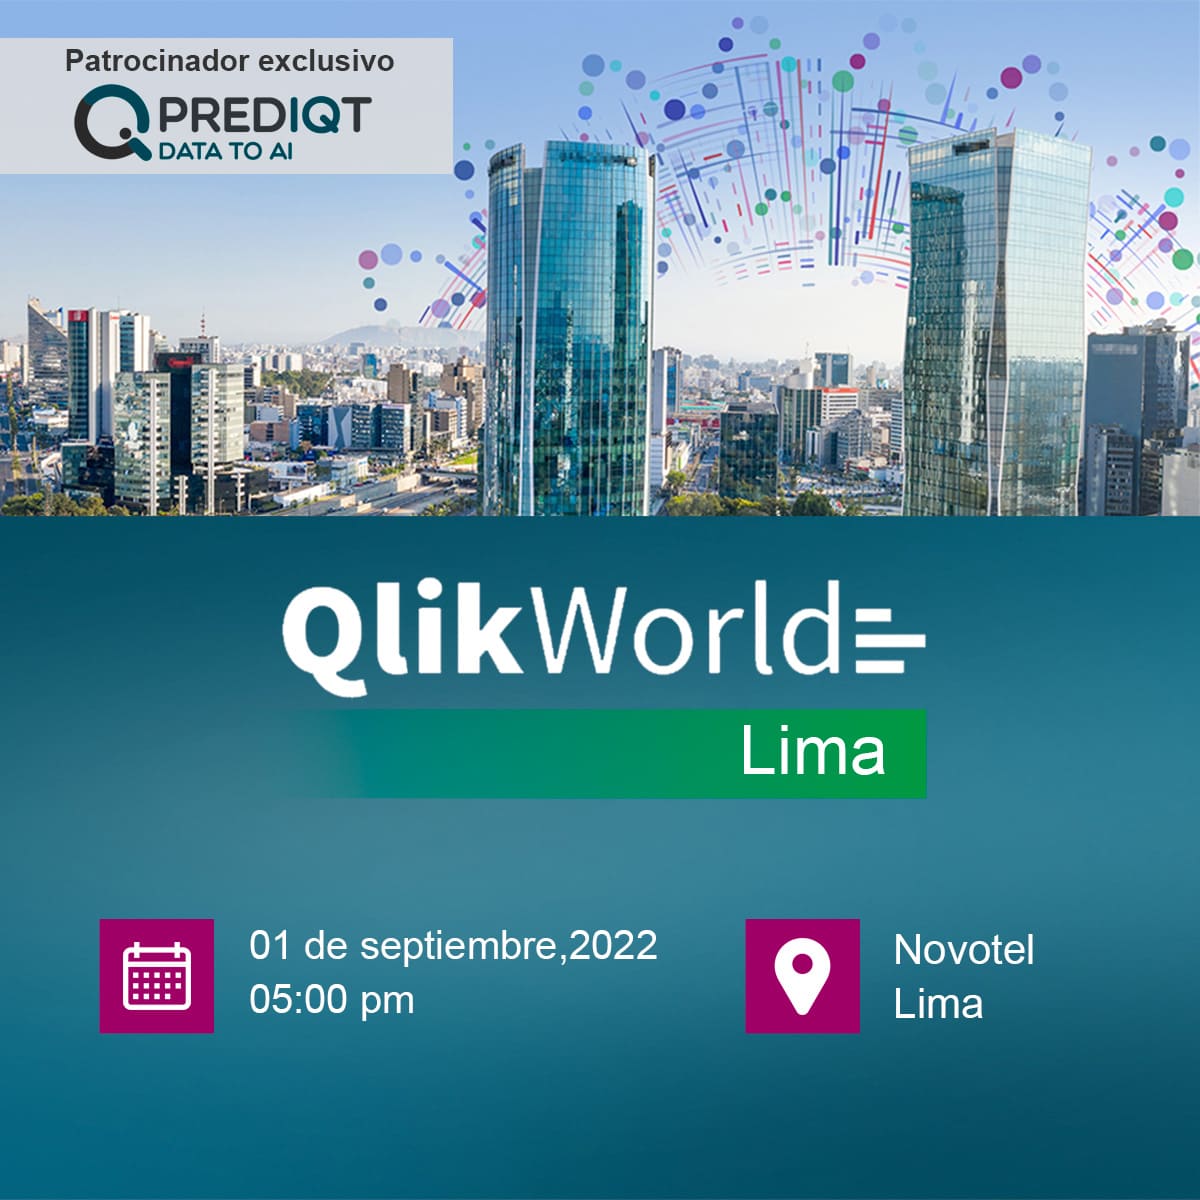 Forme parte del QlikWorld Tour Lima Analítica que desencadena acción